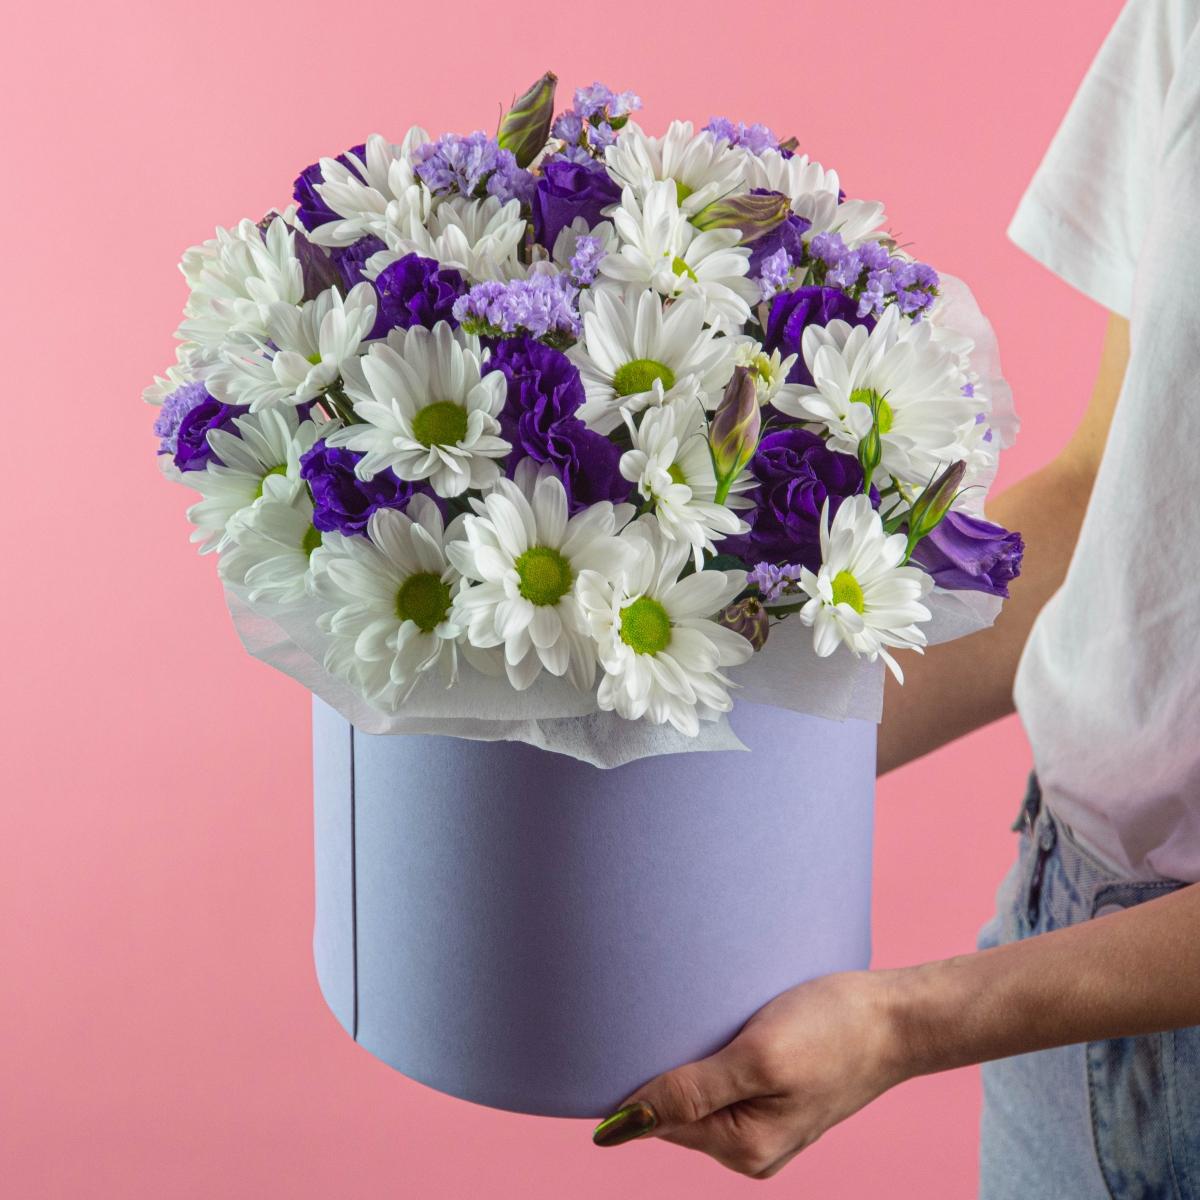 Коробка цветов с 5 хризантемами и лизиантусами